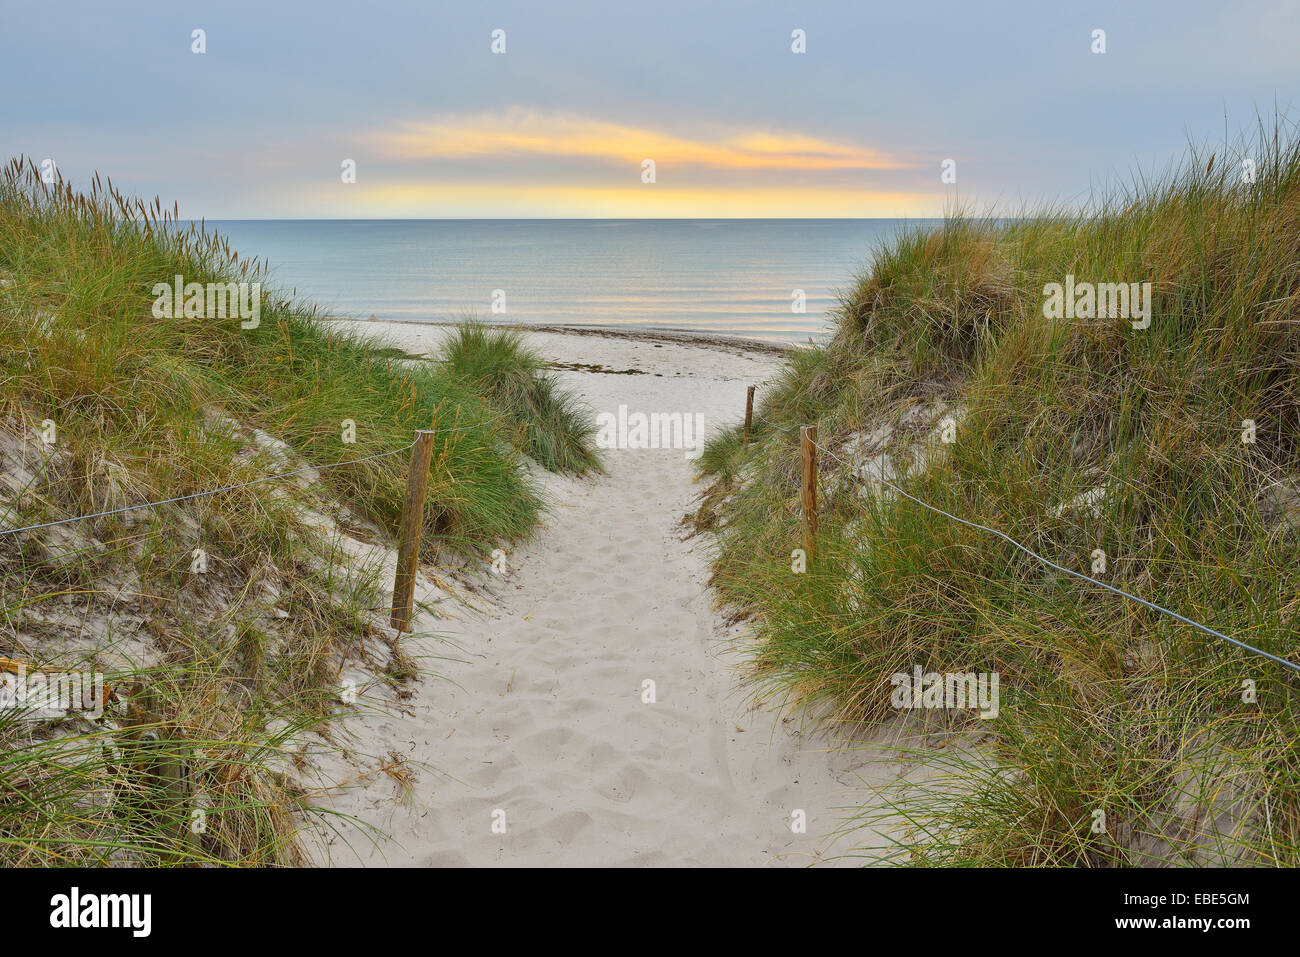 Coastal Path to Beach at Dusk, Darss West Beach, Prerow, Darss, Fischland-Darss-Zingst, Western Pomerania, Germany Stock Photo